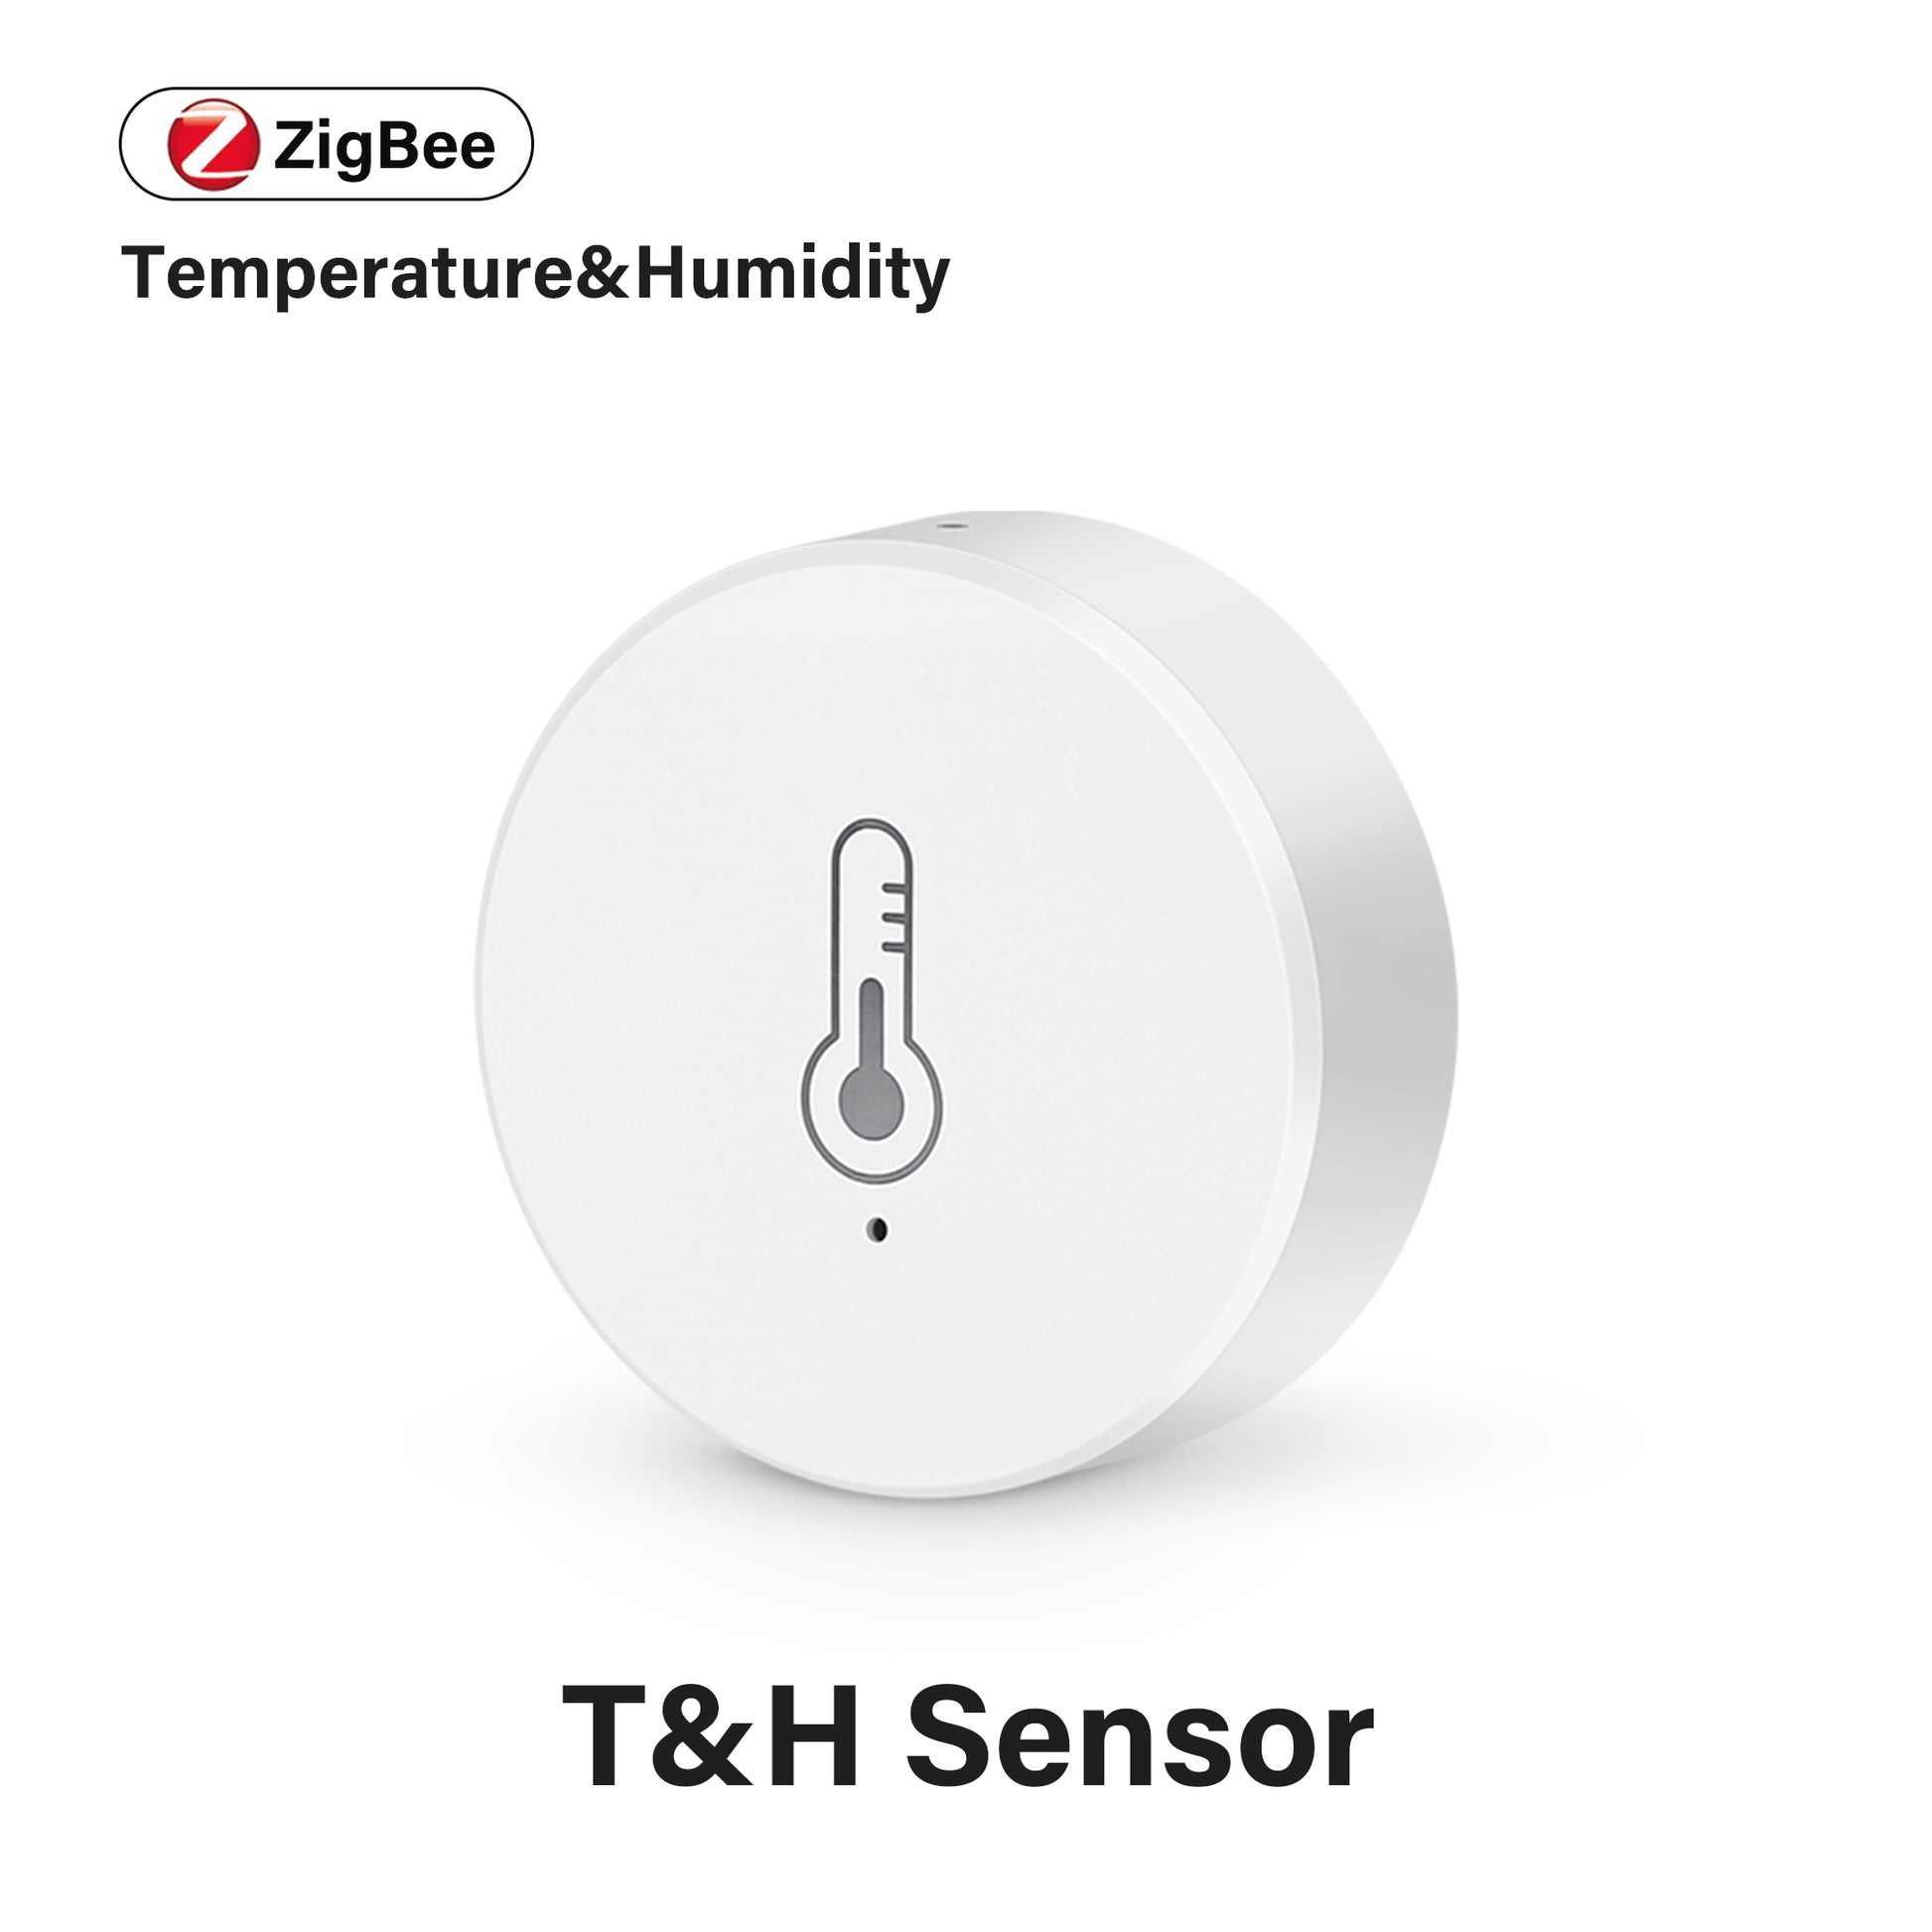 AUBESS Tuya Mini Zigbee Temperature &Humidity Sensor Work with